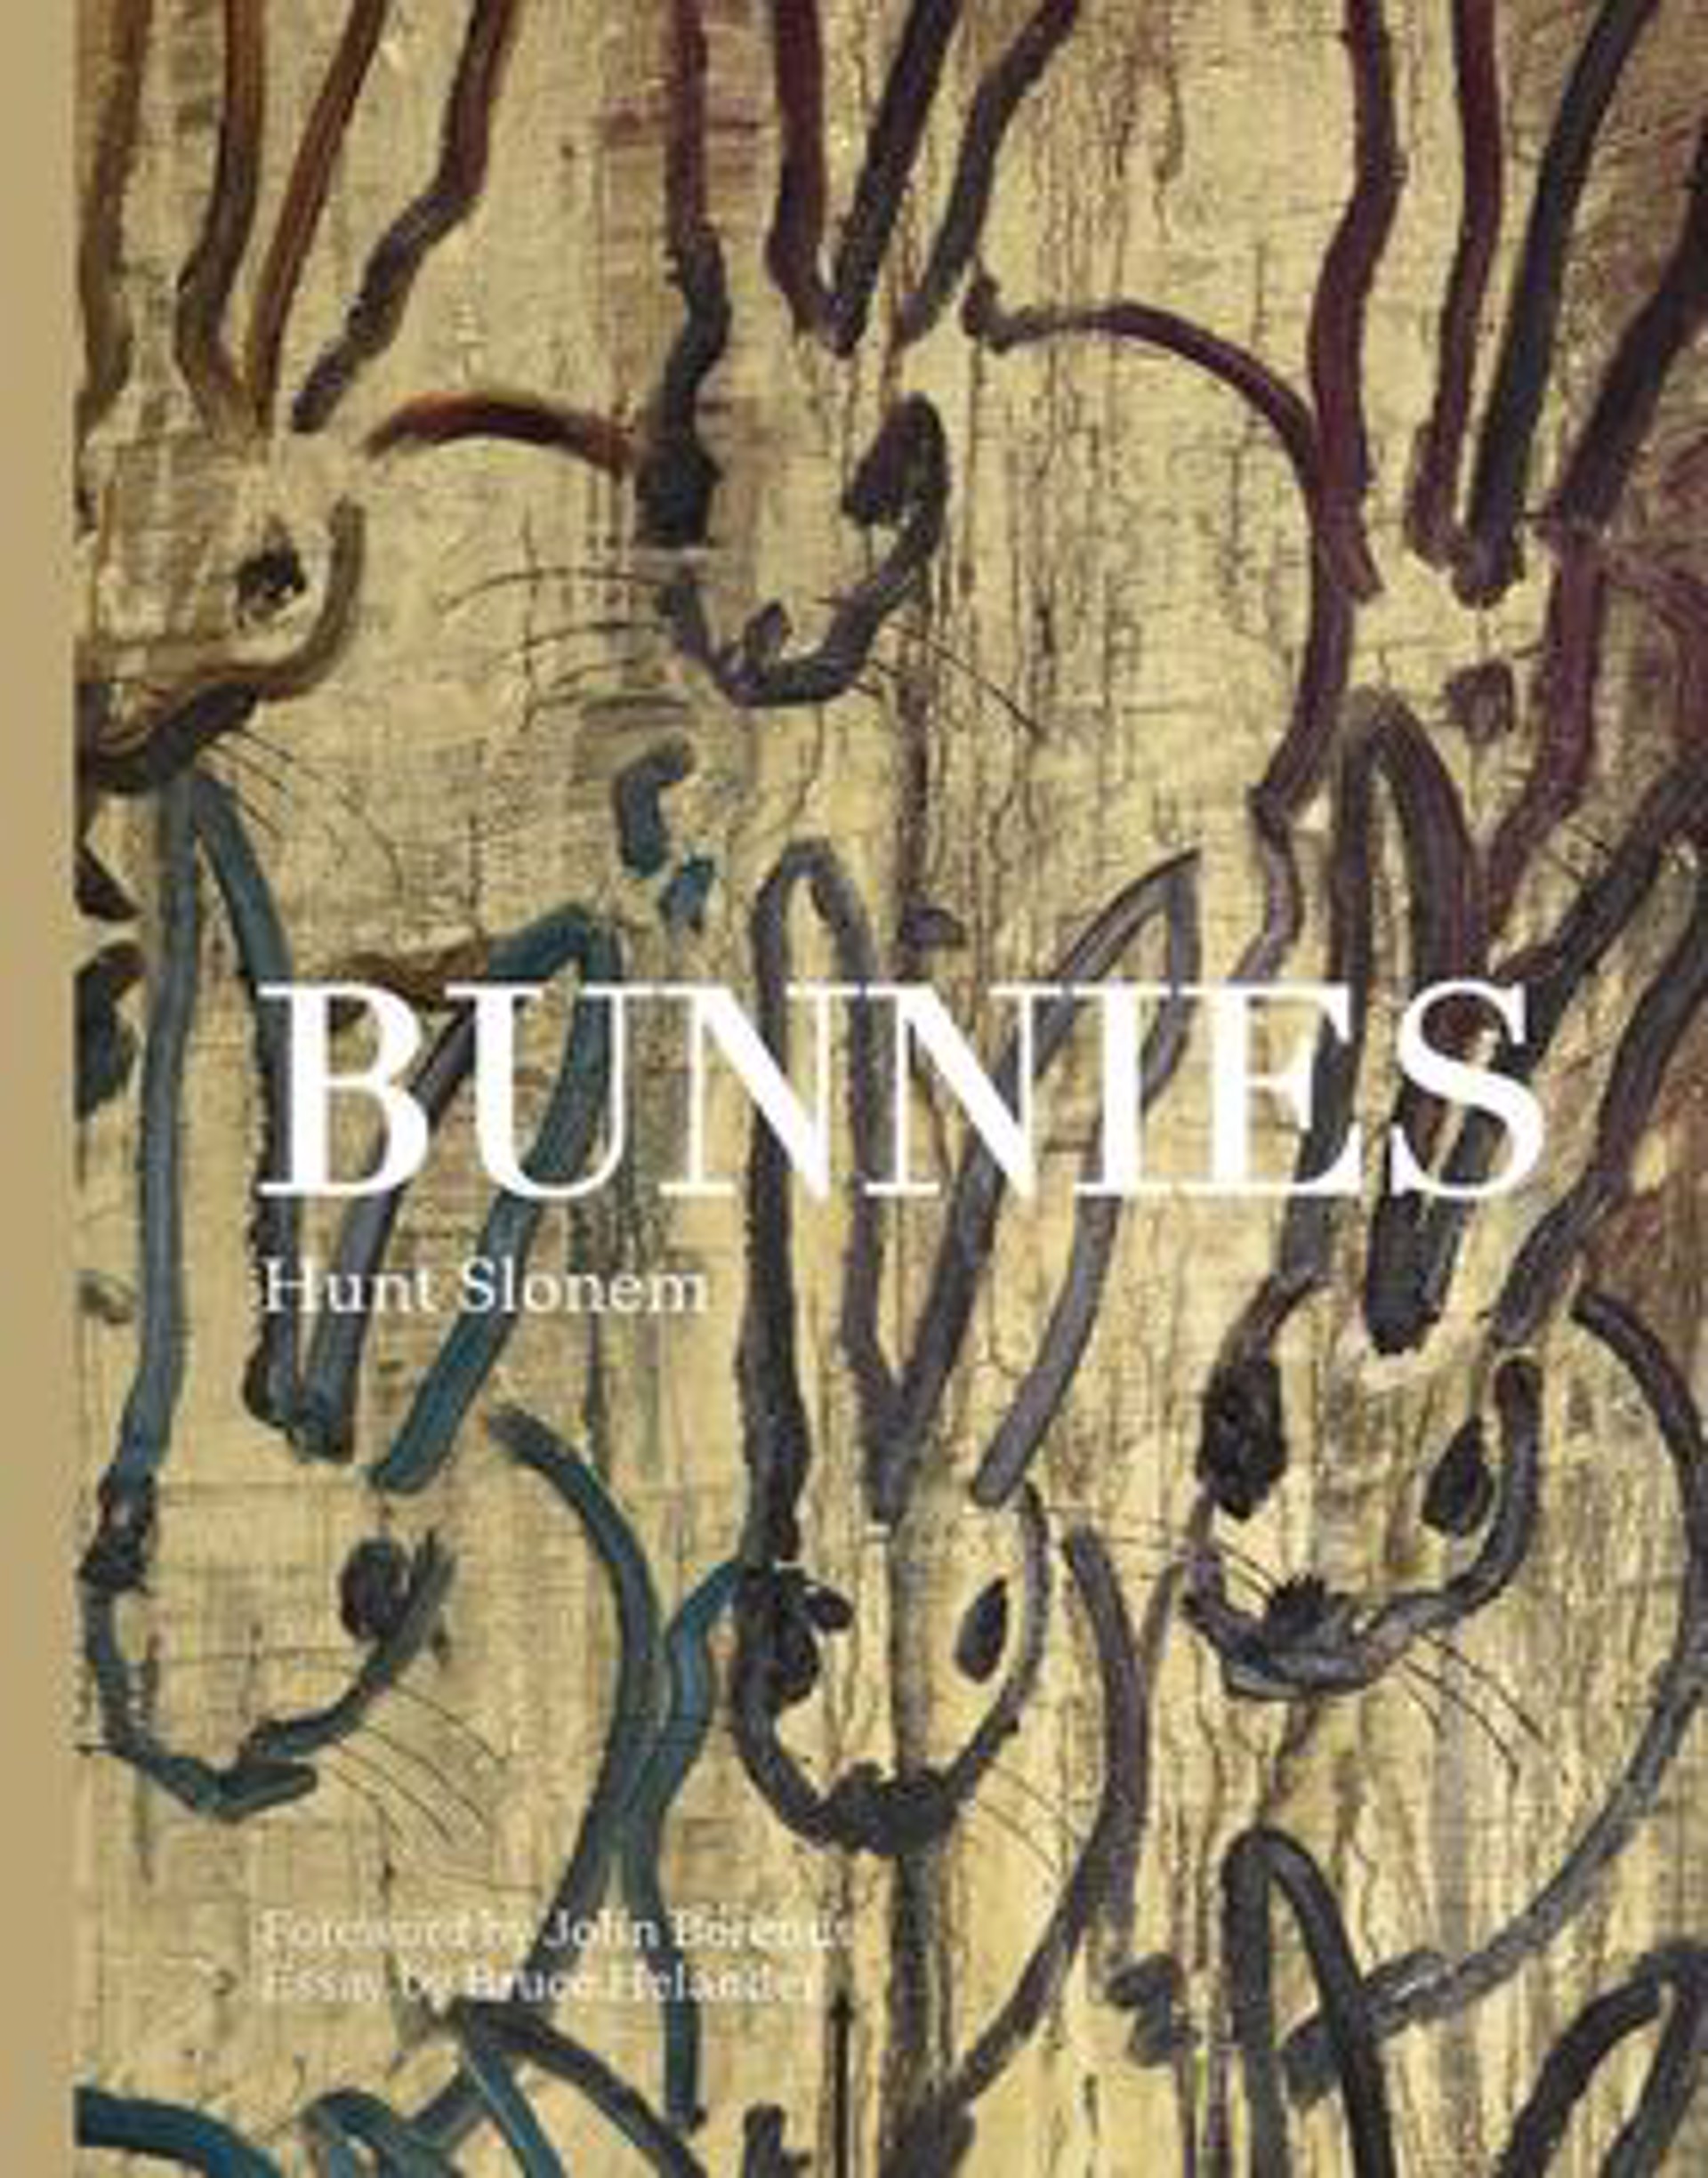 Bunnies by Hunt Slonem (Hop Up Shop)